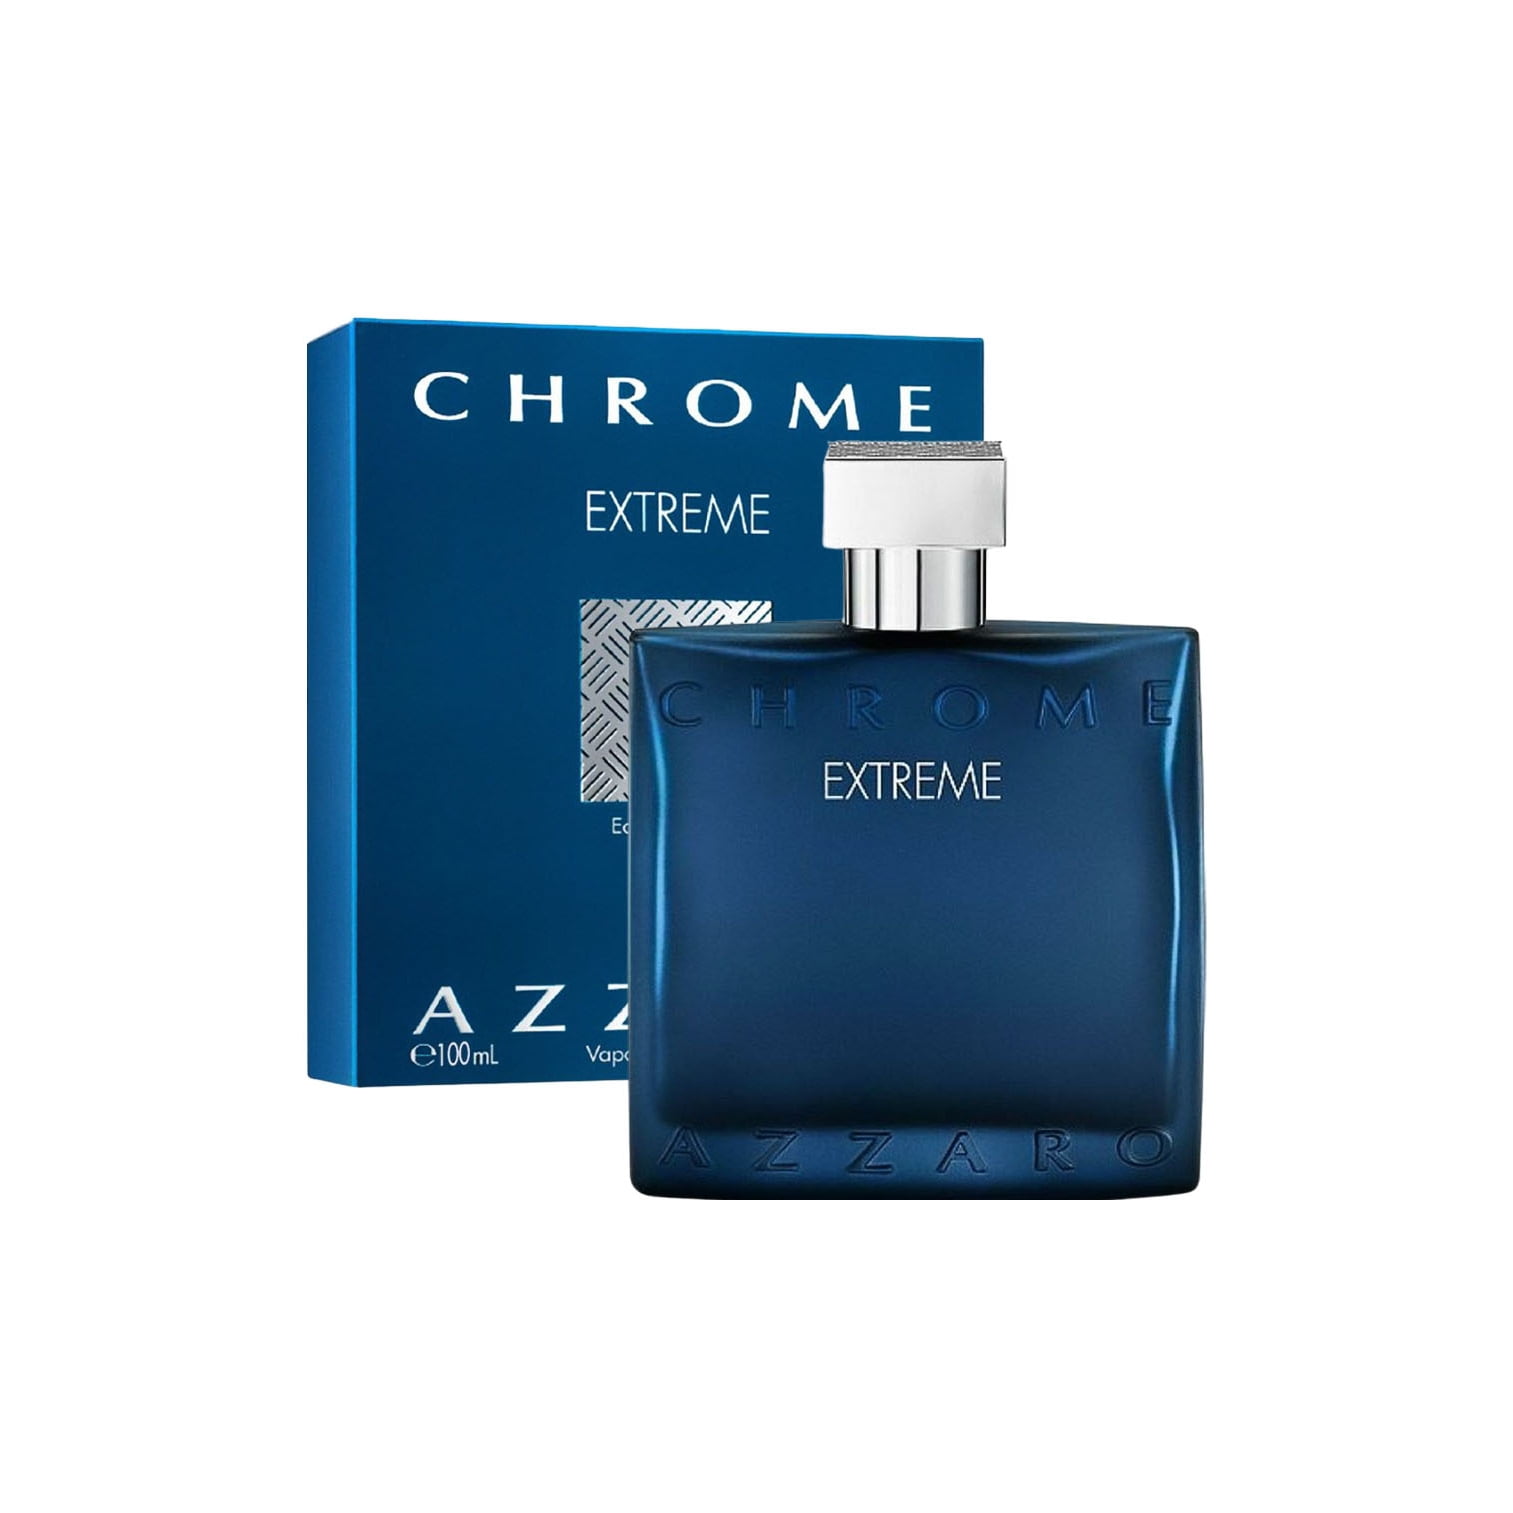 Perfumer Reviews 'Chrome EXTREME' - Azzaro 